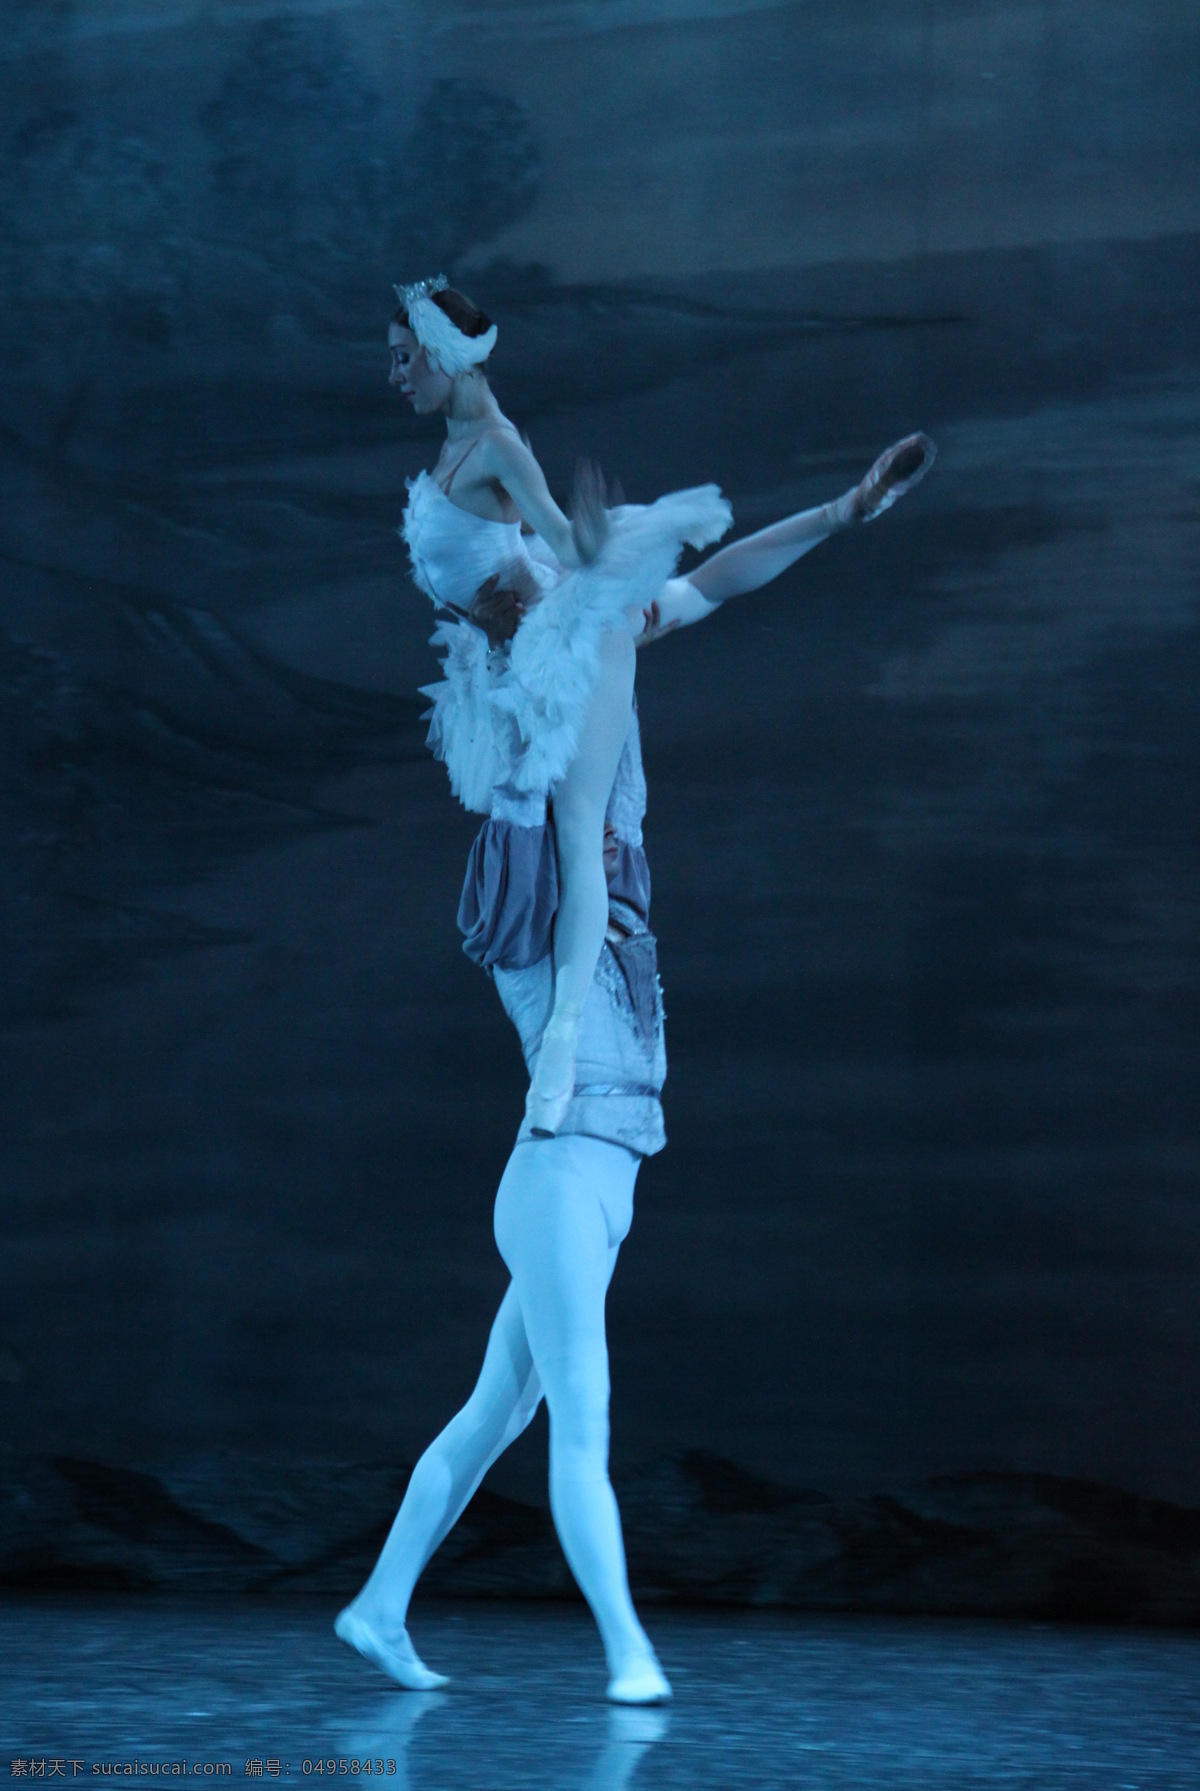 芭蕾天鹅湖 王子 白天鹅 共舞 剧照 芭蕾 芭蕾舞 芭蕾舞者 天鹅湖 芭蕾舞剧 人物 跳芭蕾的人物 视觉 舞蹈音乐 文化艺术